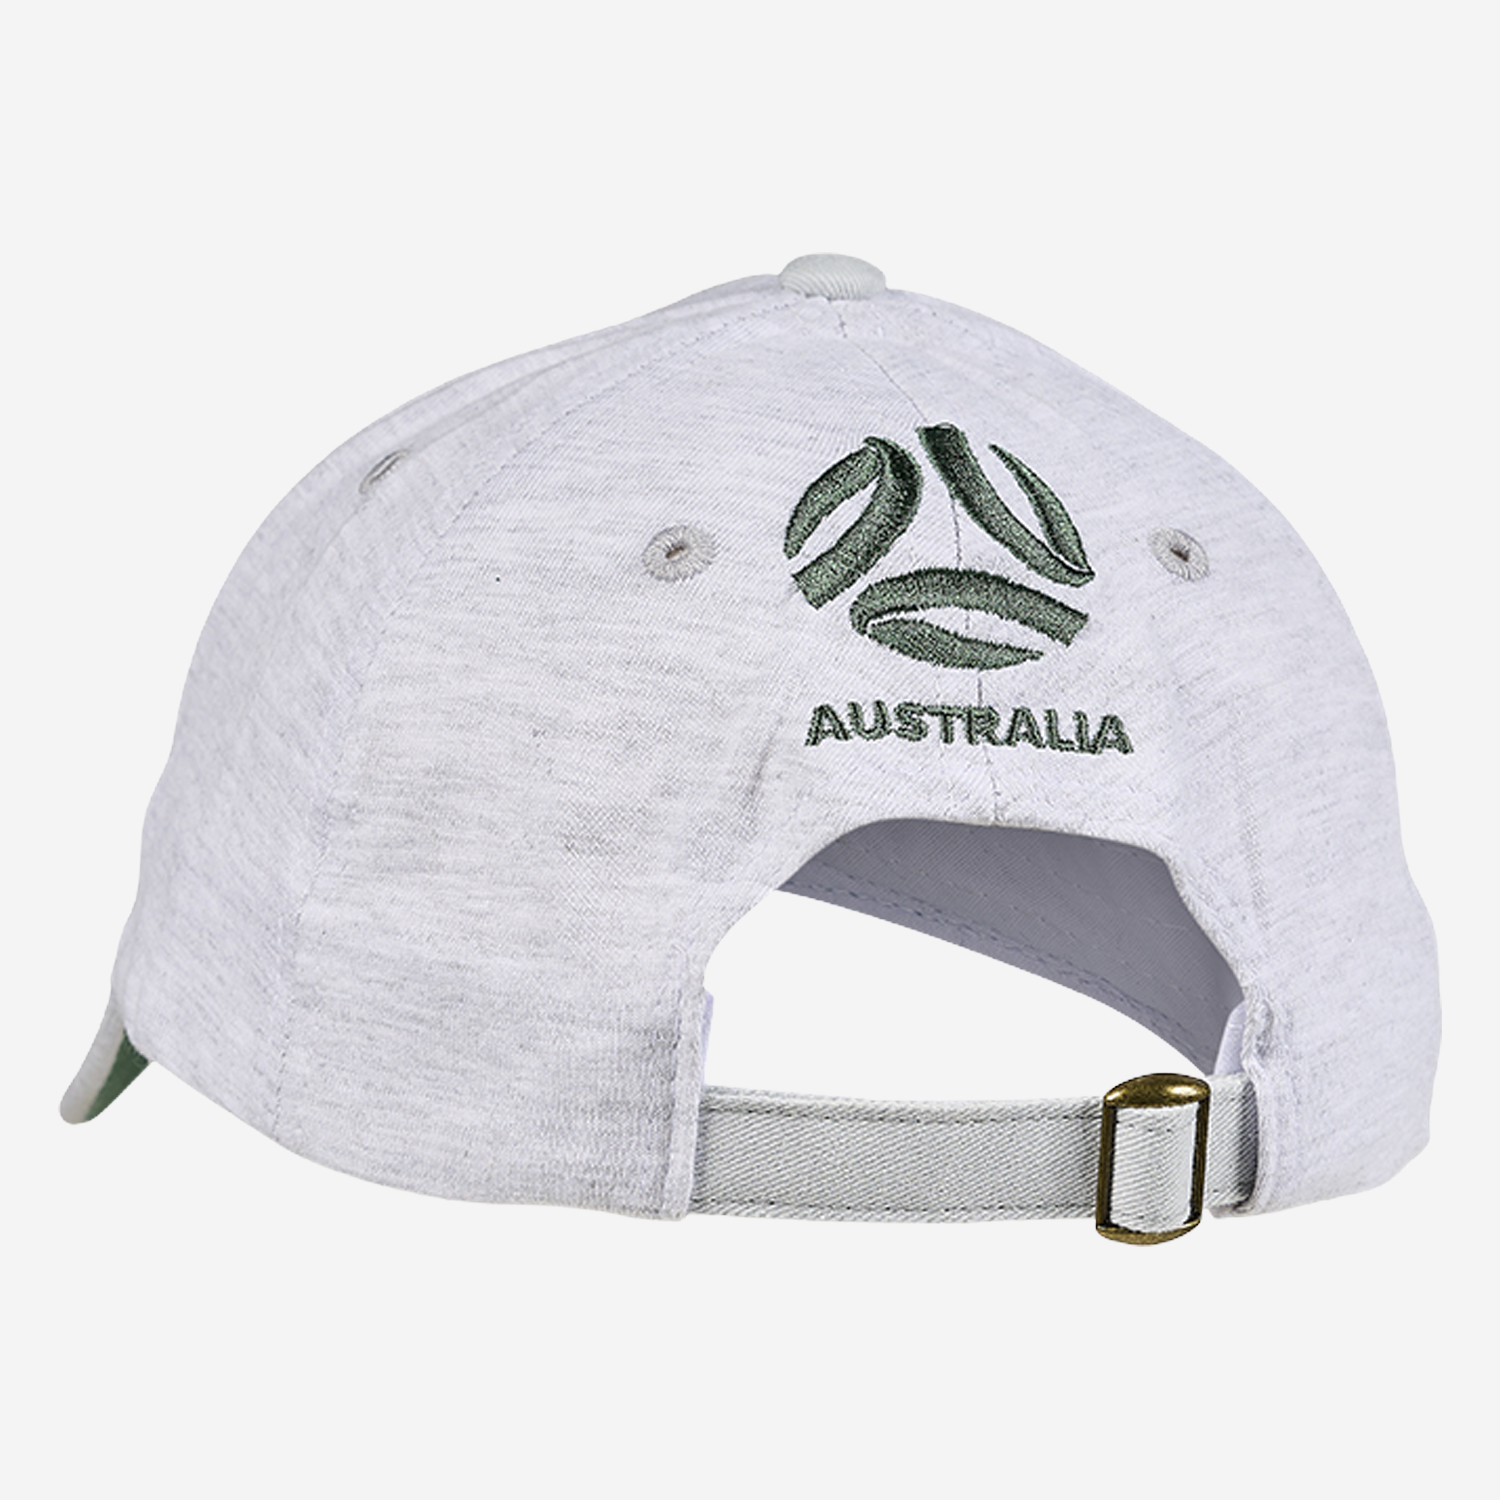 Matildas Leaf cap